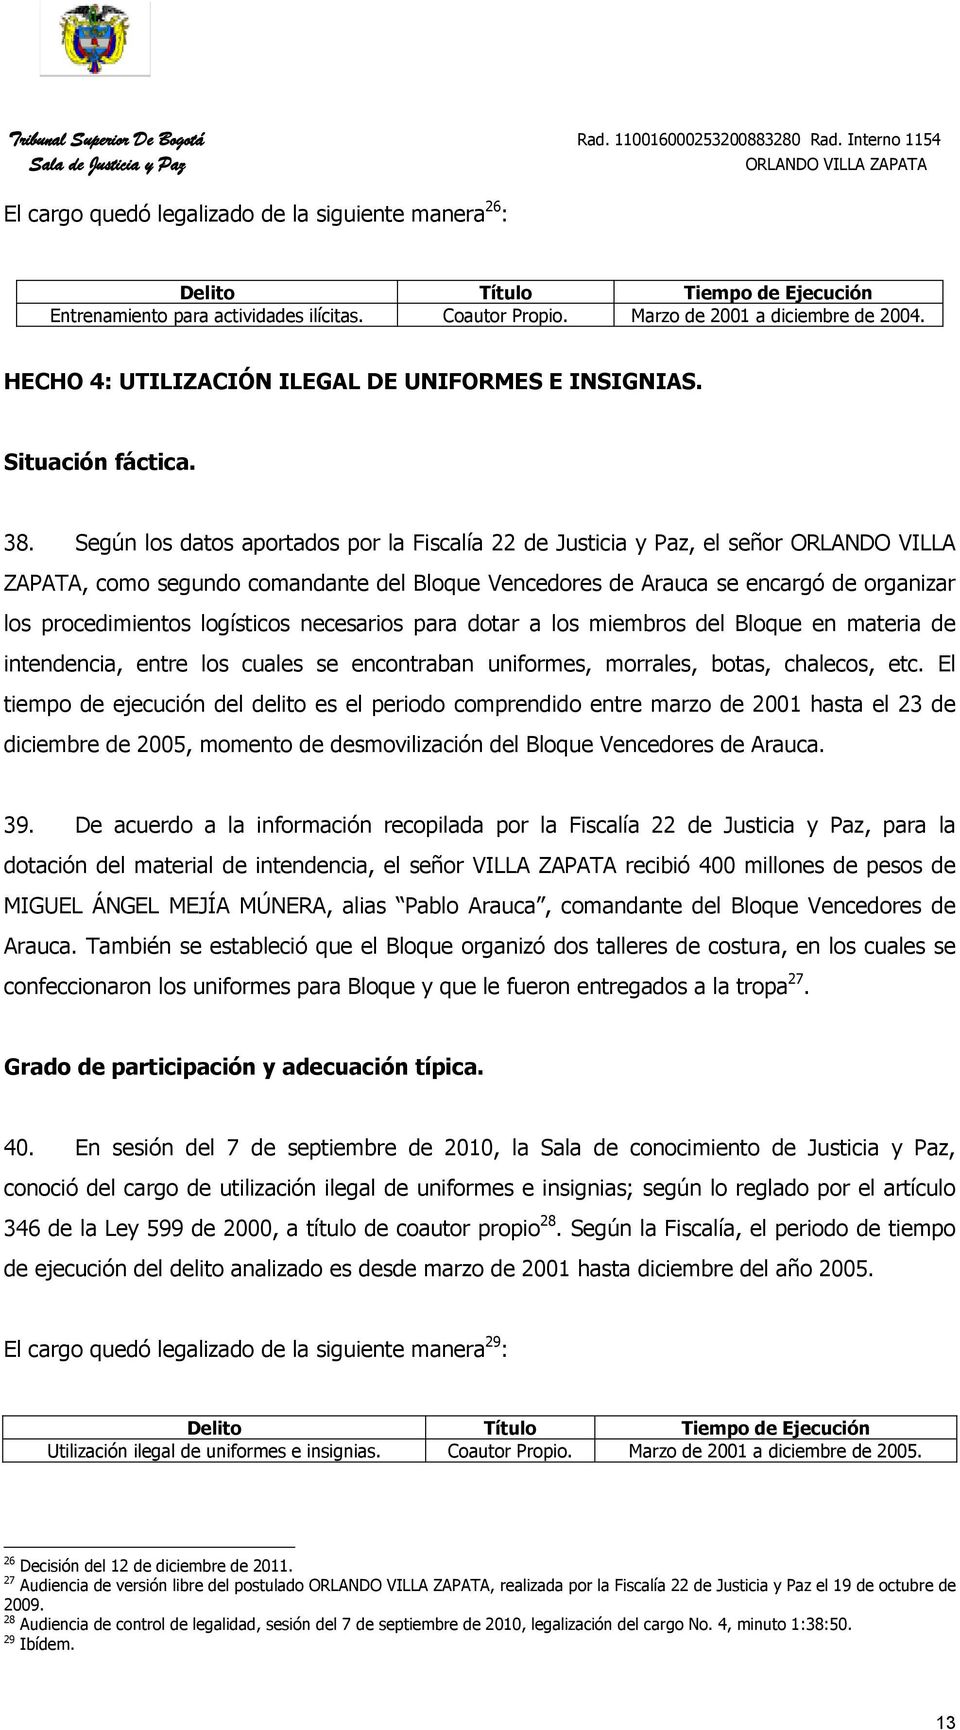 Según los datos aportados por la Fiscalía 22 de Justicia y Paz, el señor ORLANDO VILLA ZAPATA, como segundo comandante del Bloque Vencedores de Arauca se encargó de organizar los procedimientos